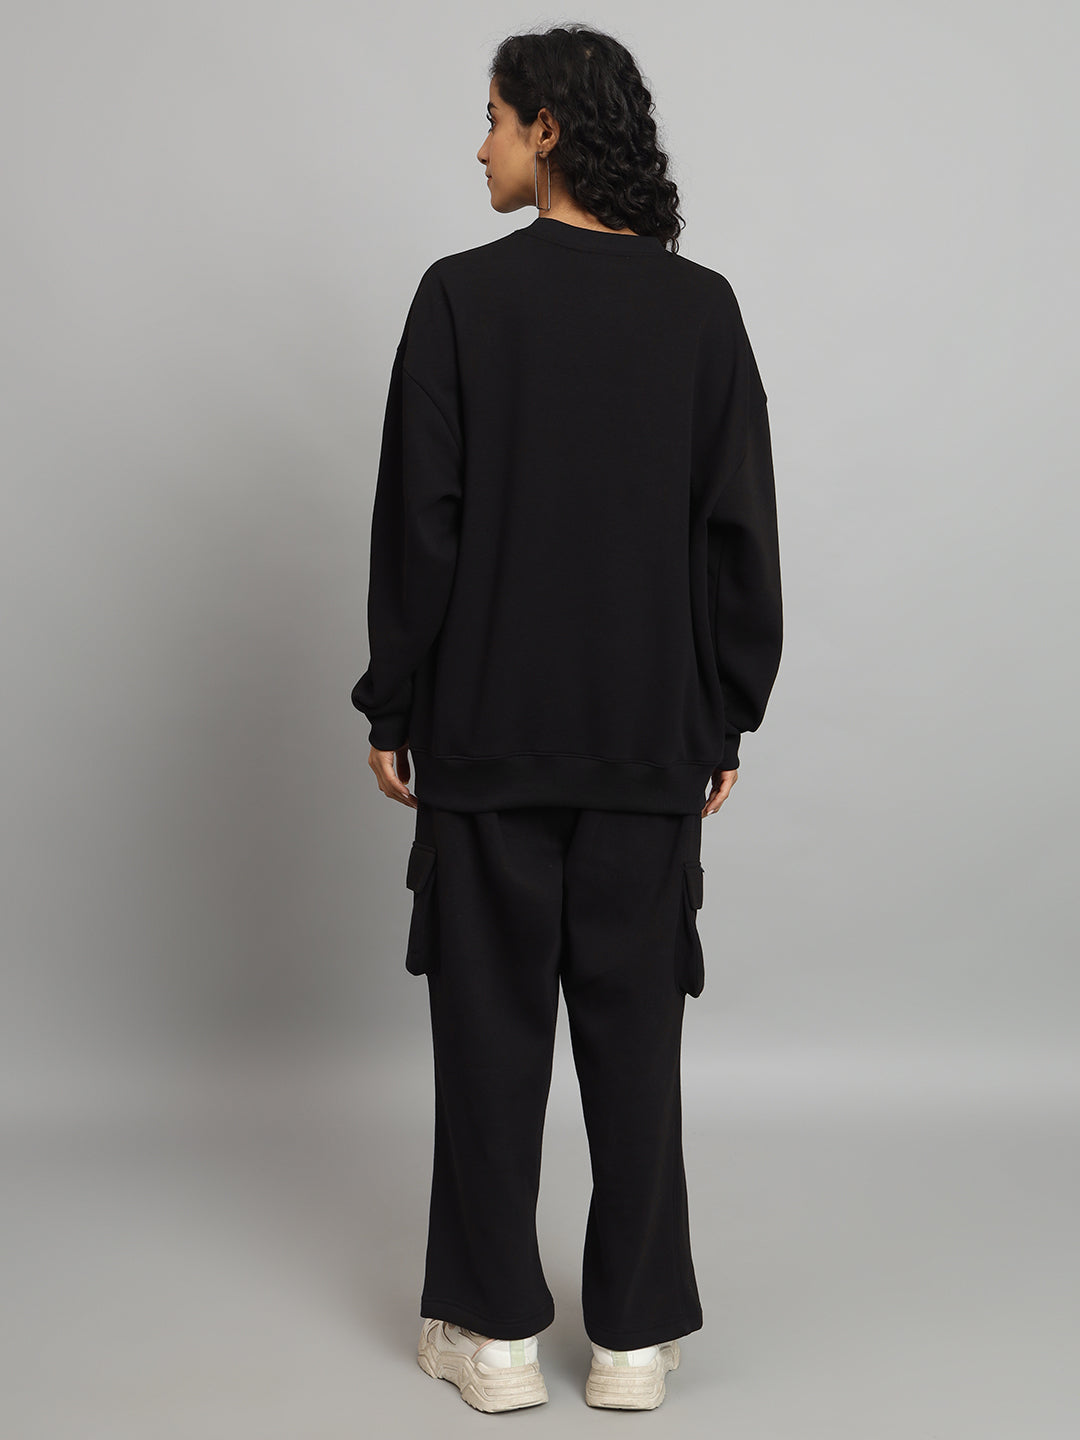 Griffel Women Oversized GFL Print Fit Basic Round Neck 100% Cotton Fleece Black Tracksuit - griffel